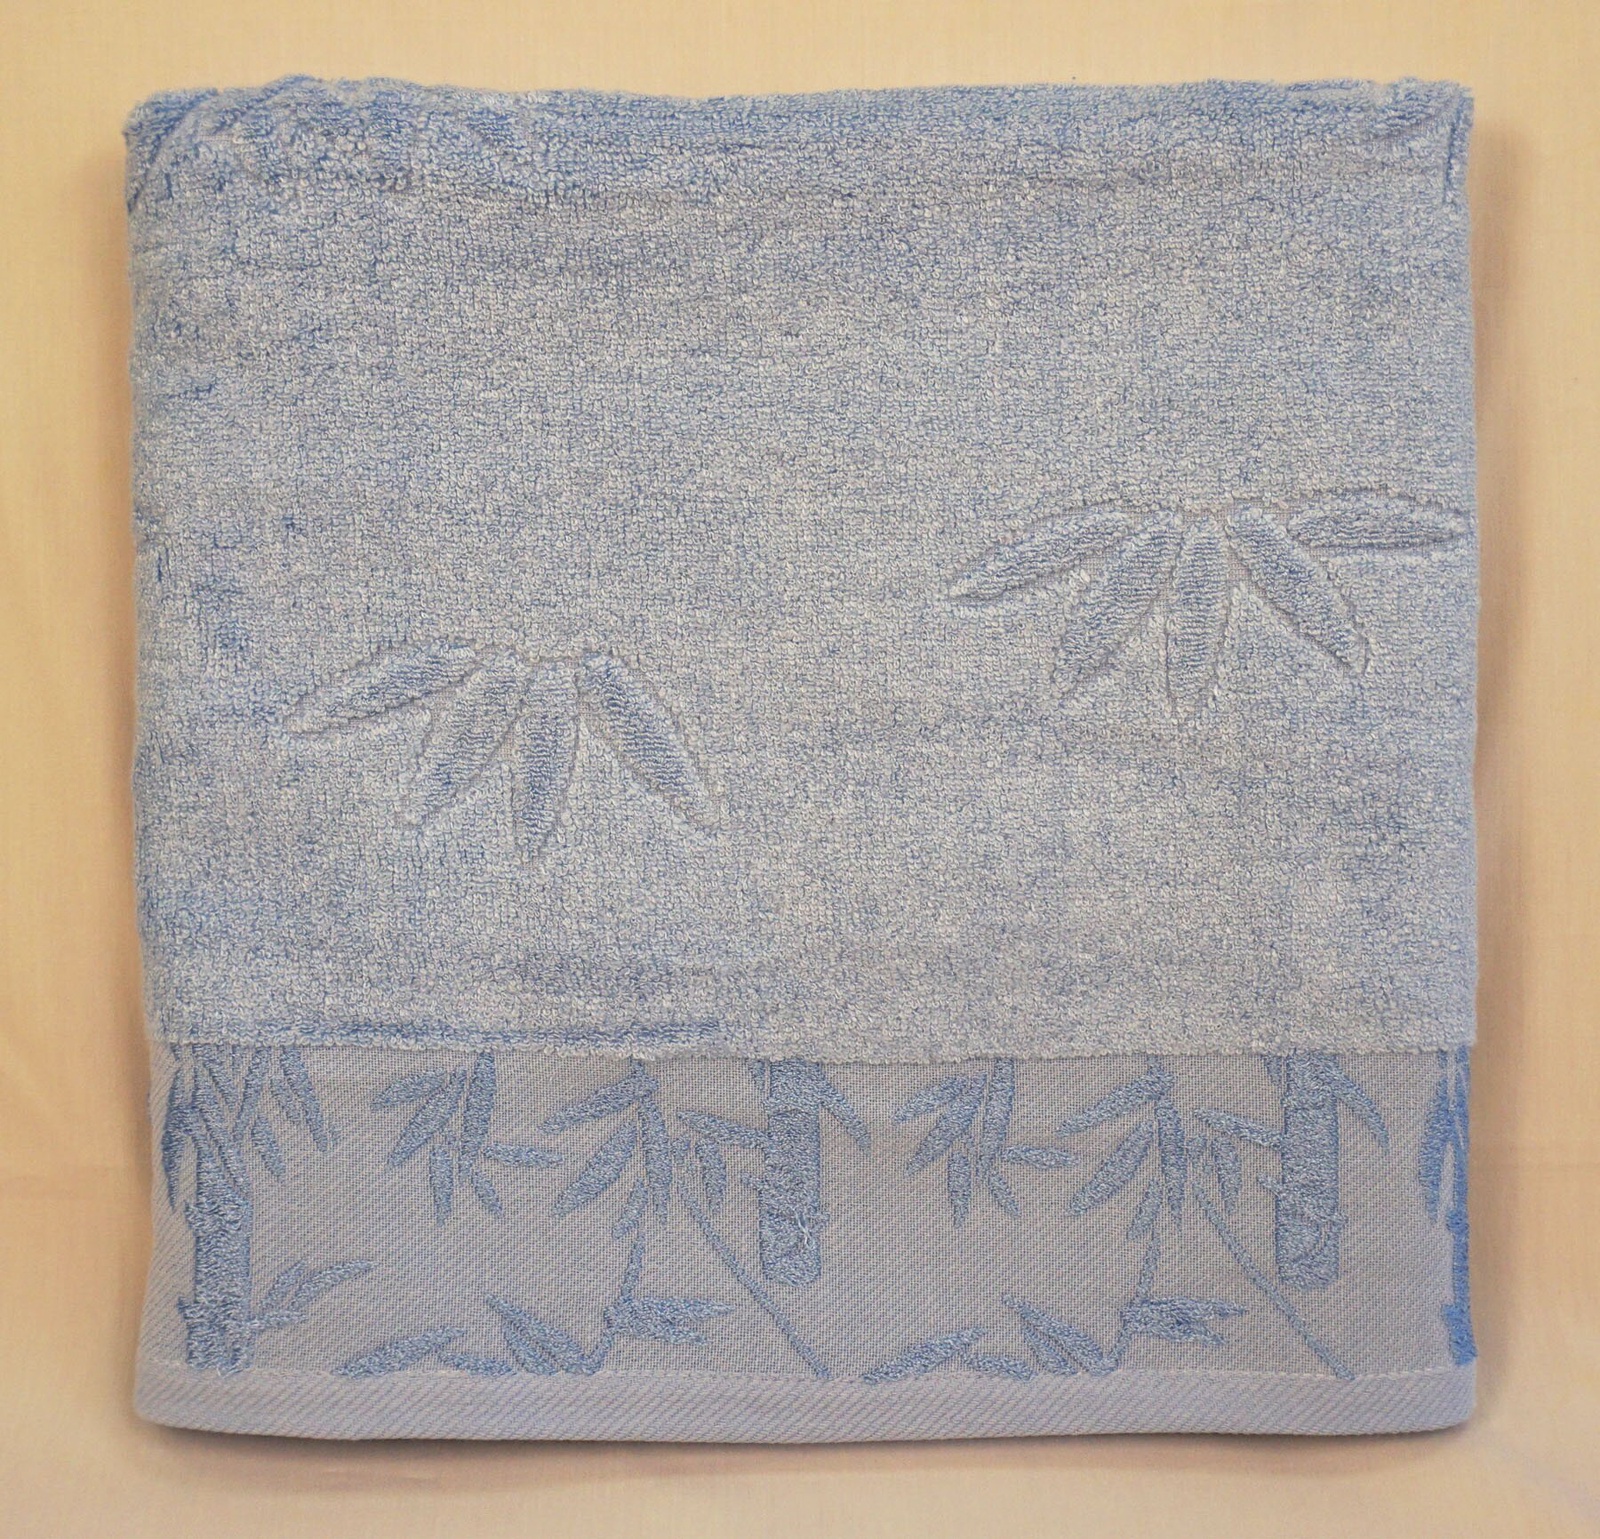 Полотенце банное Grand Stil Бамбук, размер 65*135, GS-H03b, синий